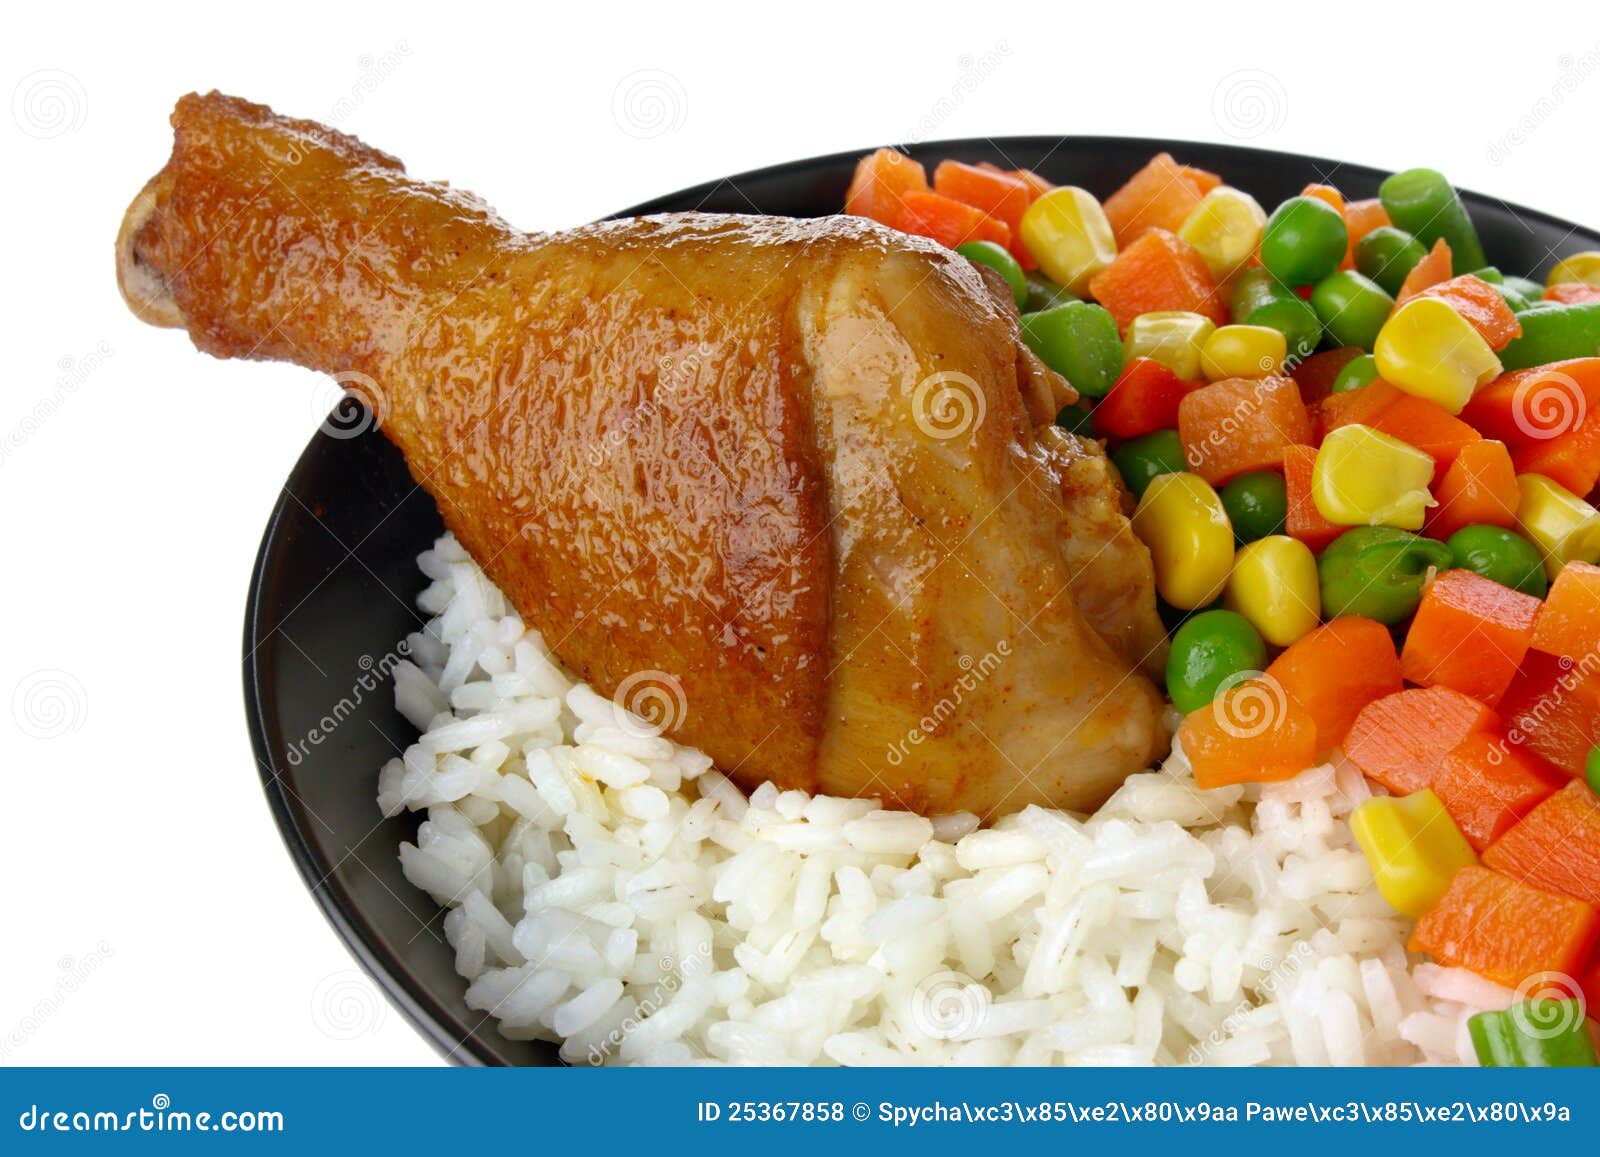 chicken rice clipart - photo #47